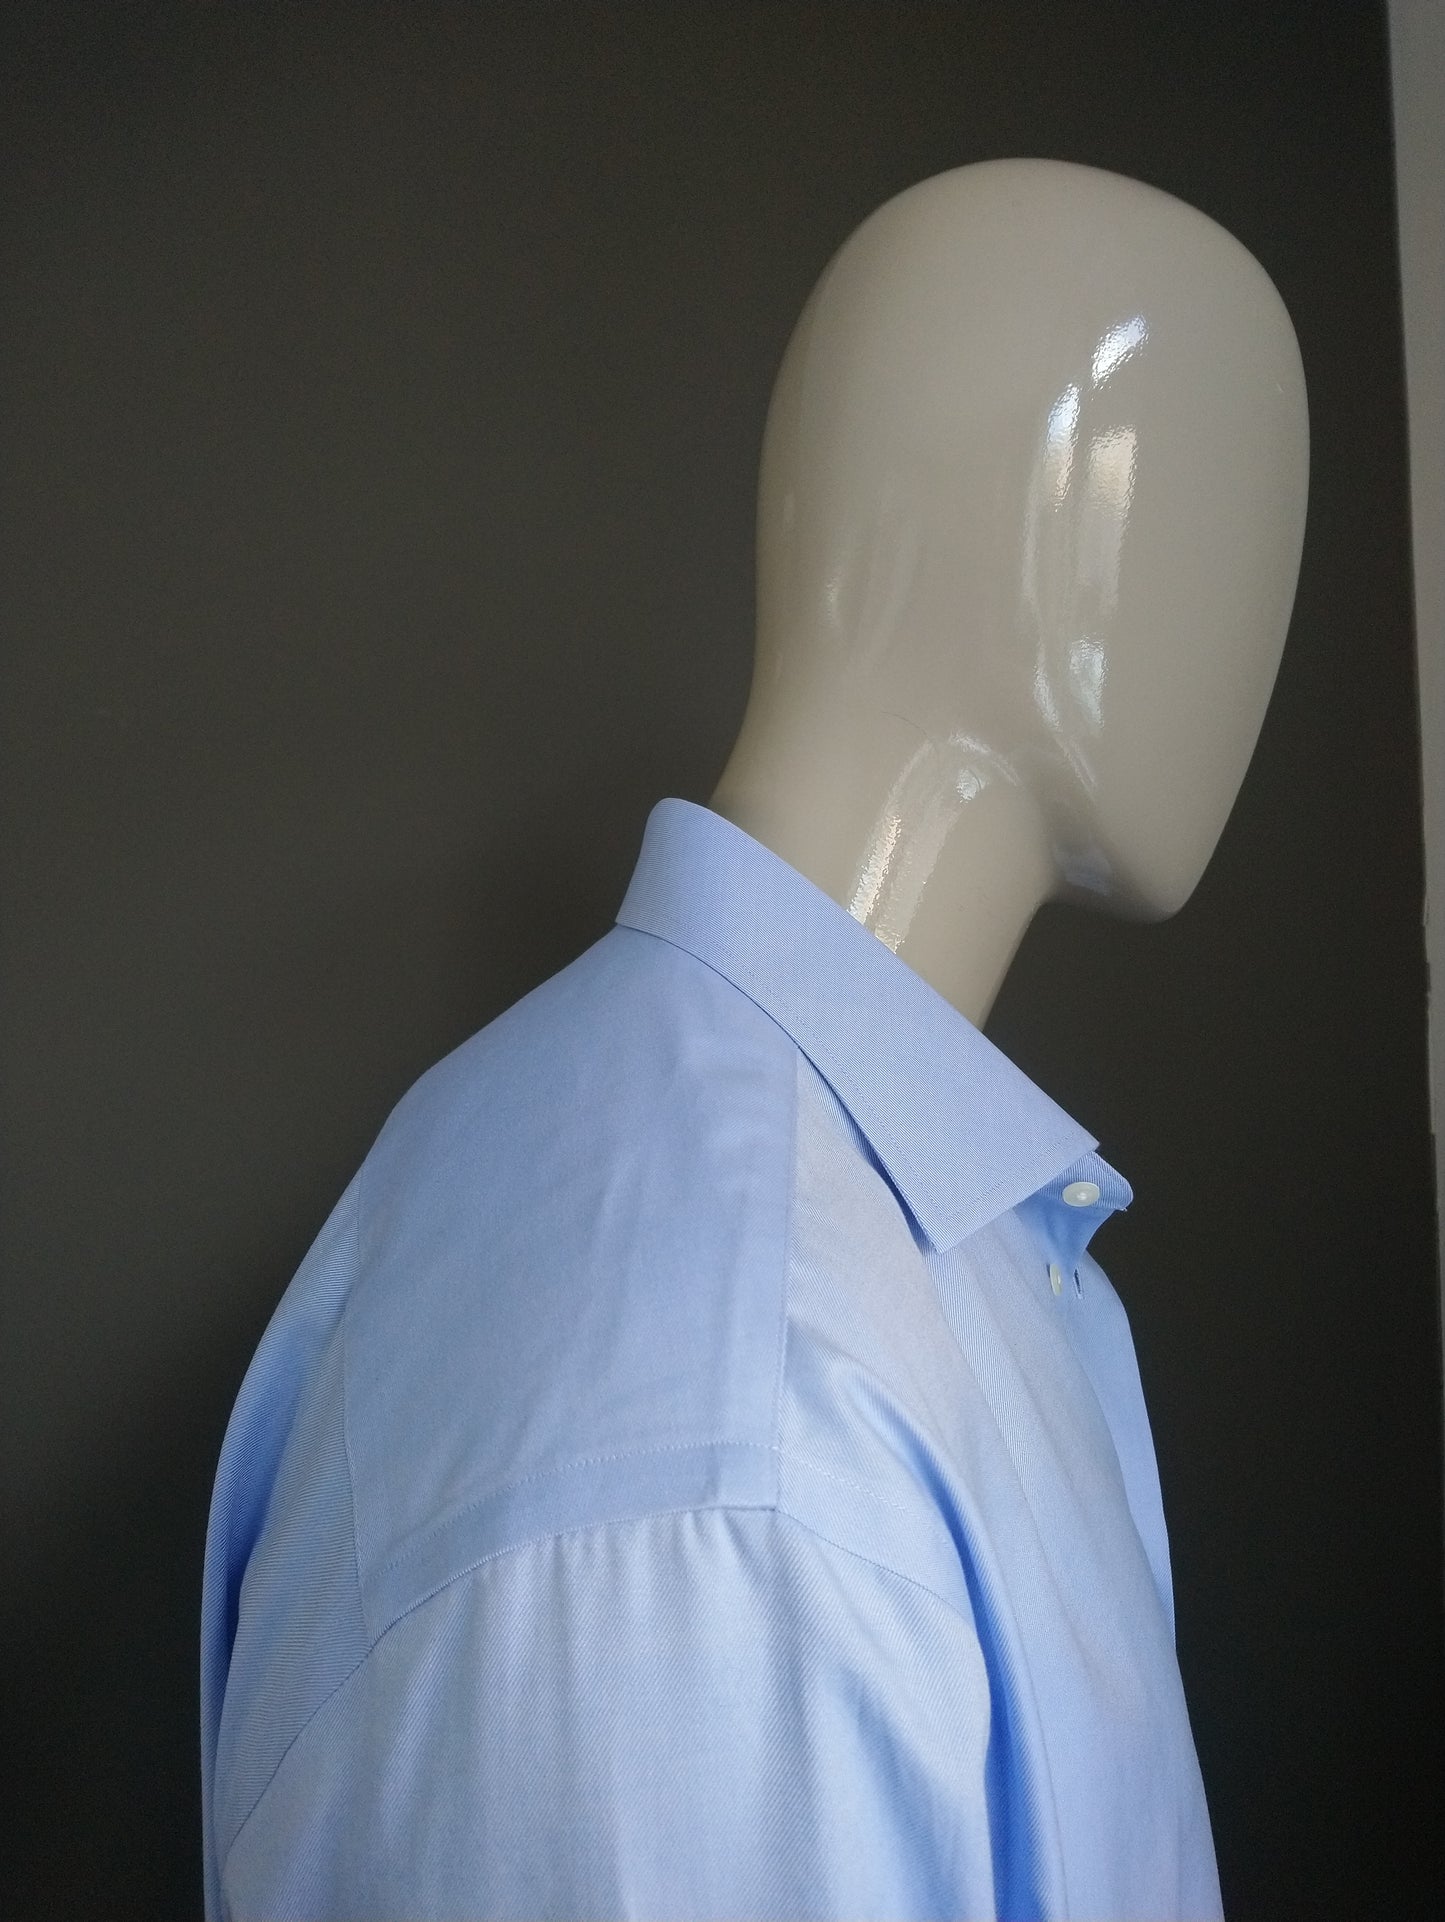 Maglietta Thomas Maine. Colorato azzurro. Dimensione 46 / xxl / 2xl.